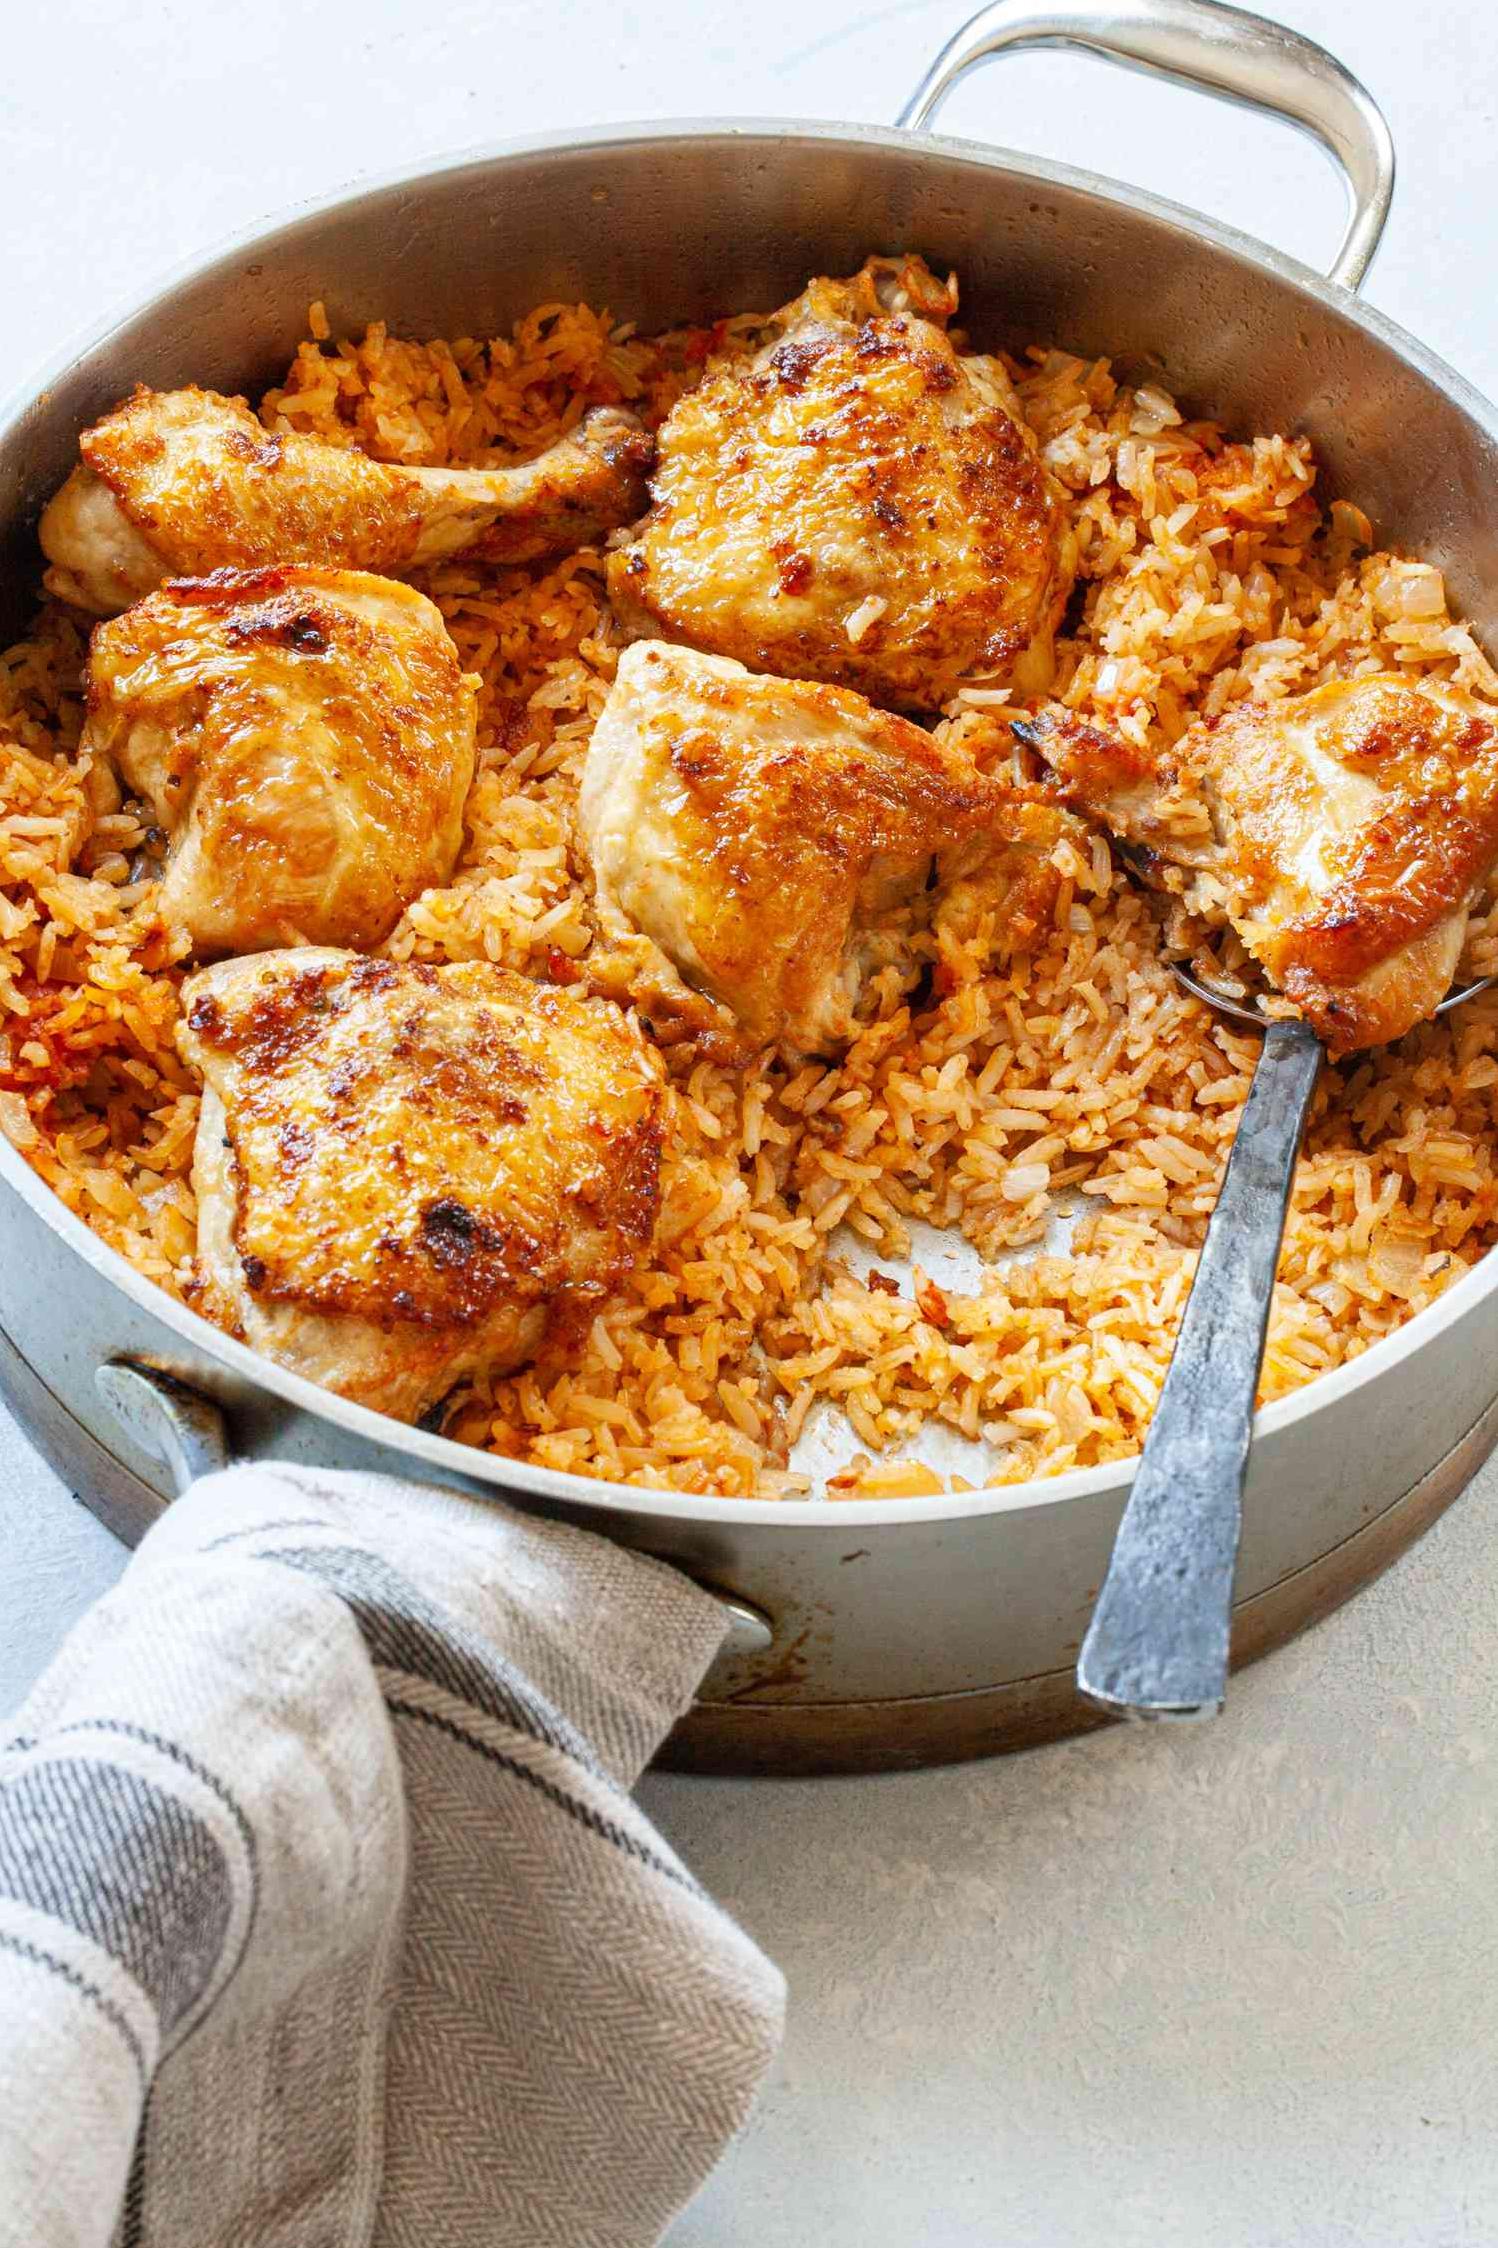 Arroz Con Pollo - Chicken and Rice